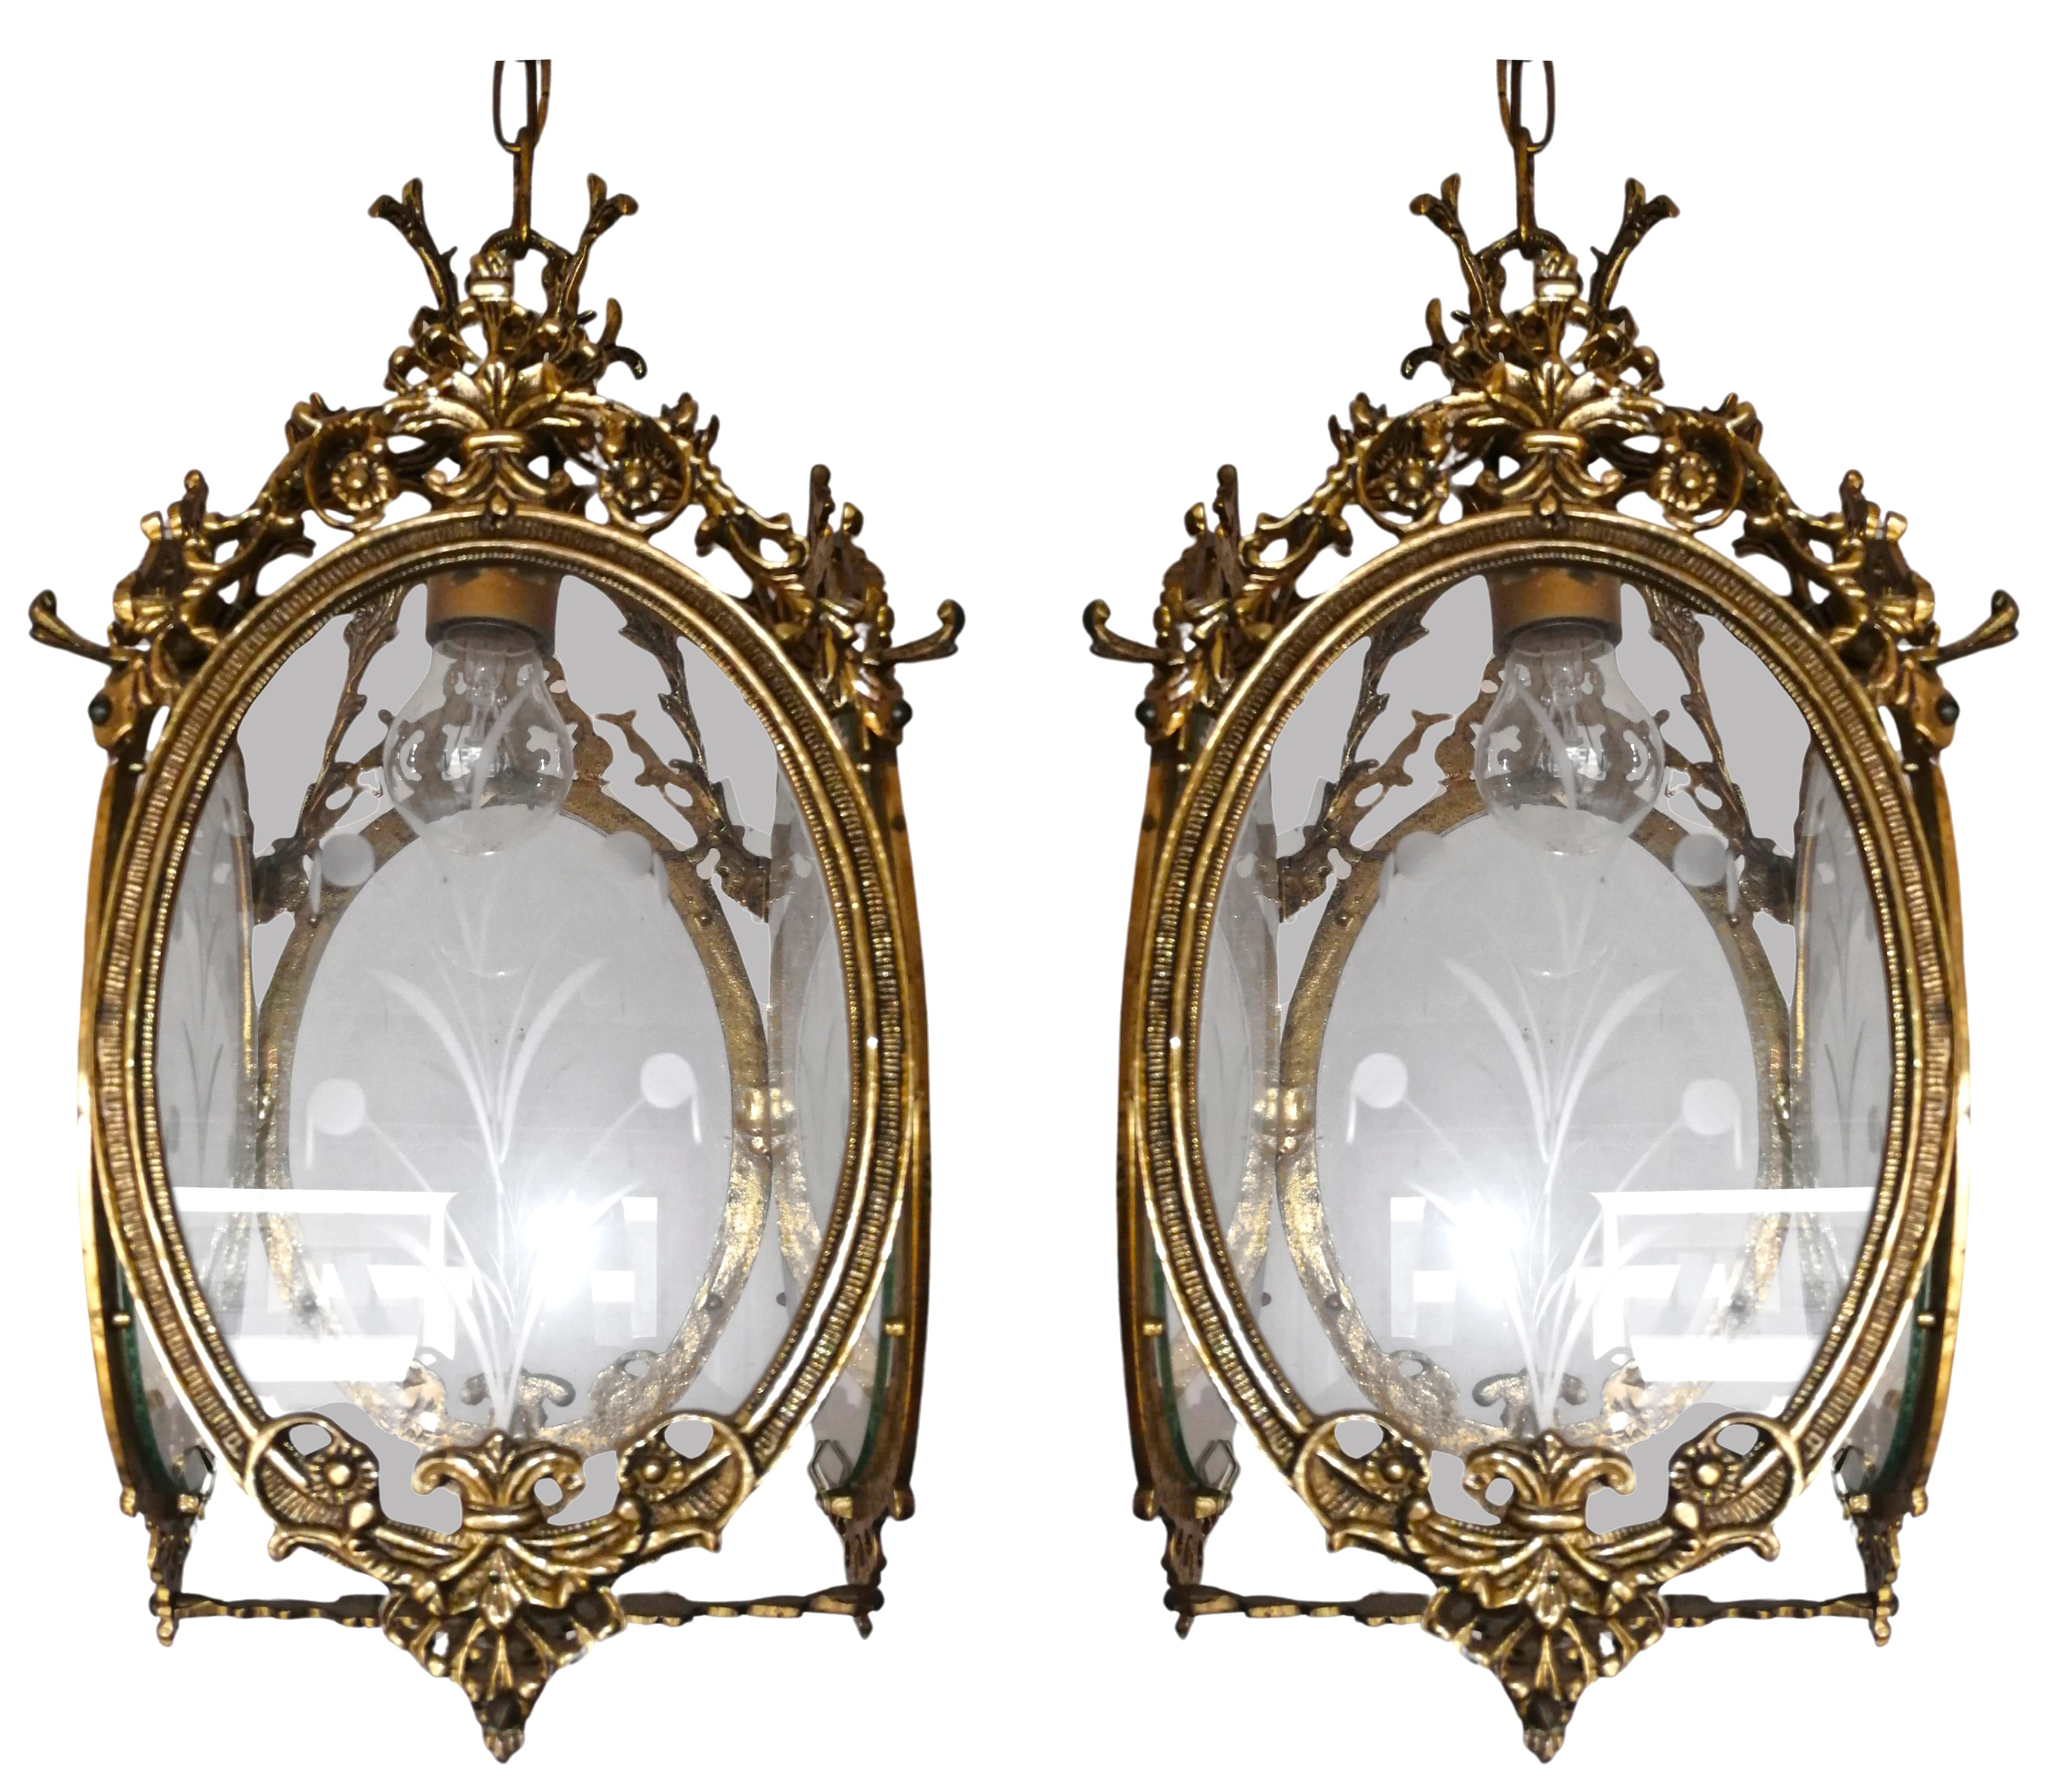 Schöne antike Paar Louis XVI Französisch Laternen. Vier Rahmen aus vergoldeter Bronze mit geschliffenen und geätzten Glasscheiben als Schirm.
Preis pro Einheit.

Abmessungen:
